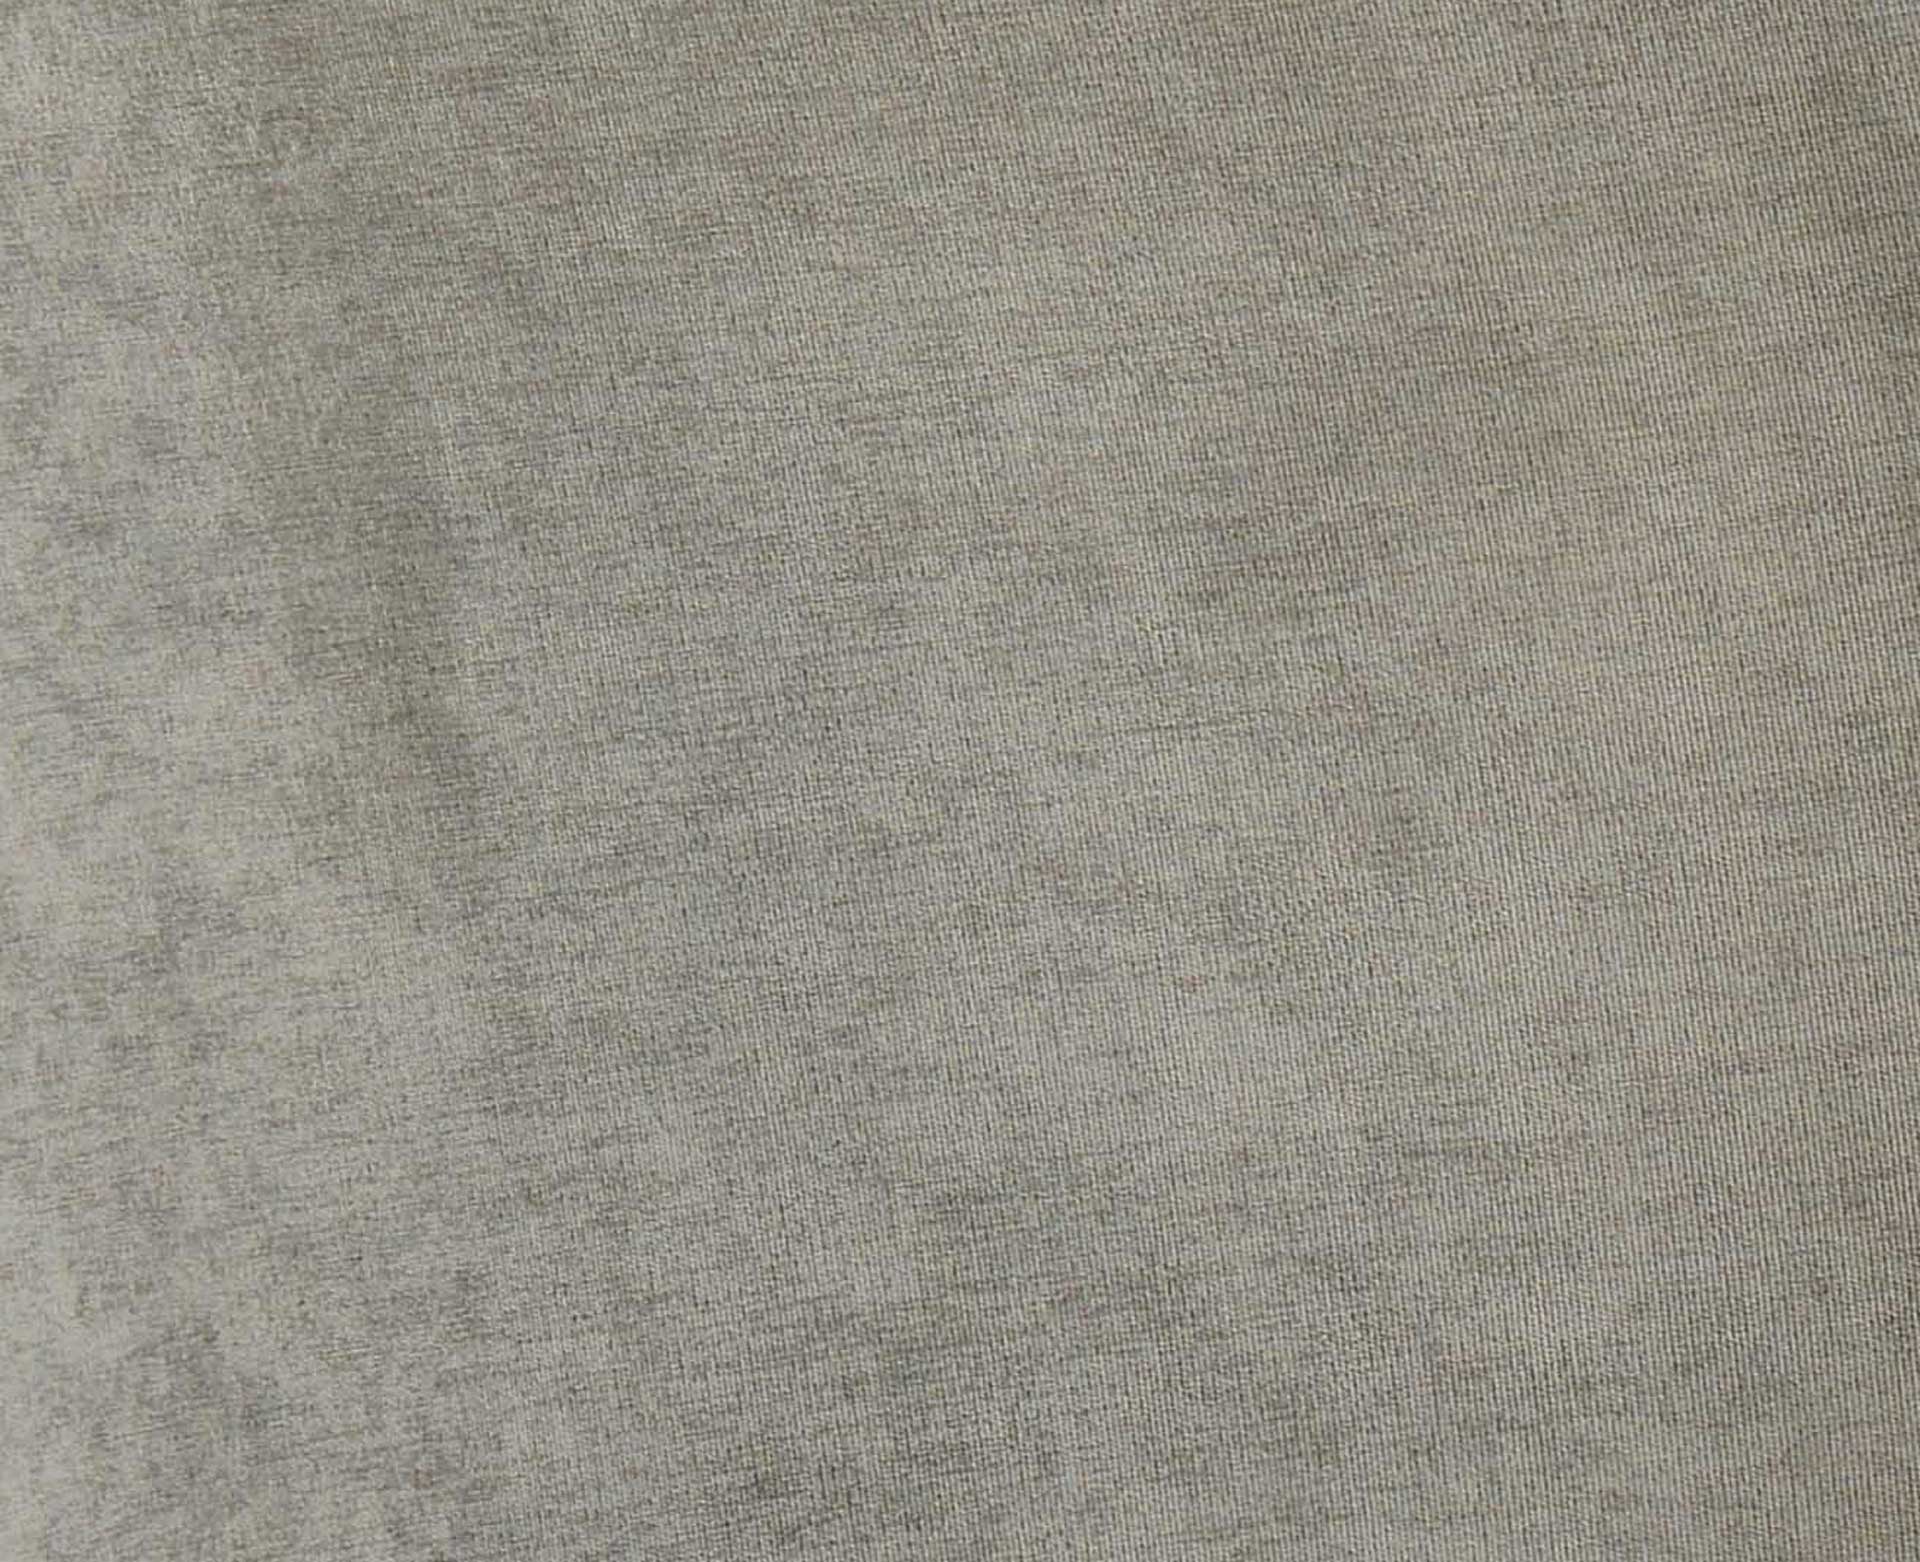 Eventide Silver Legs Velvet Chair Gray (Set of 2)